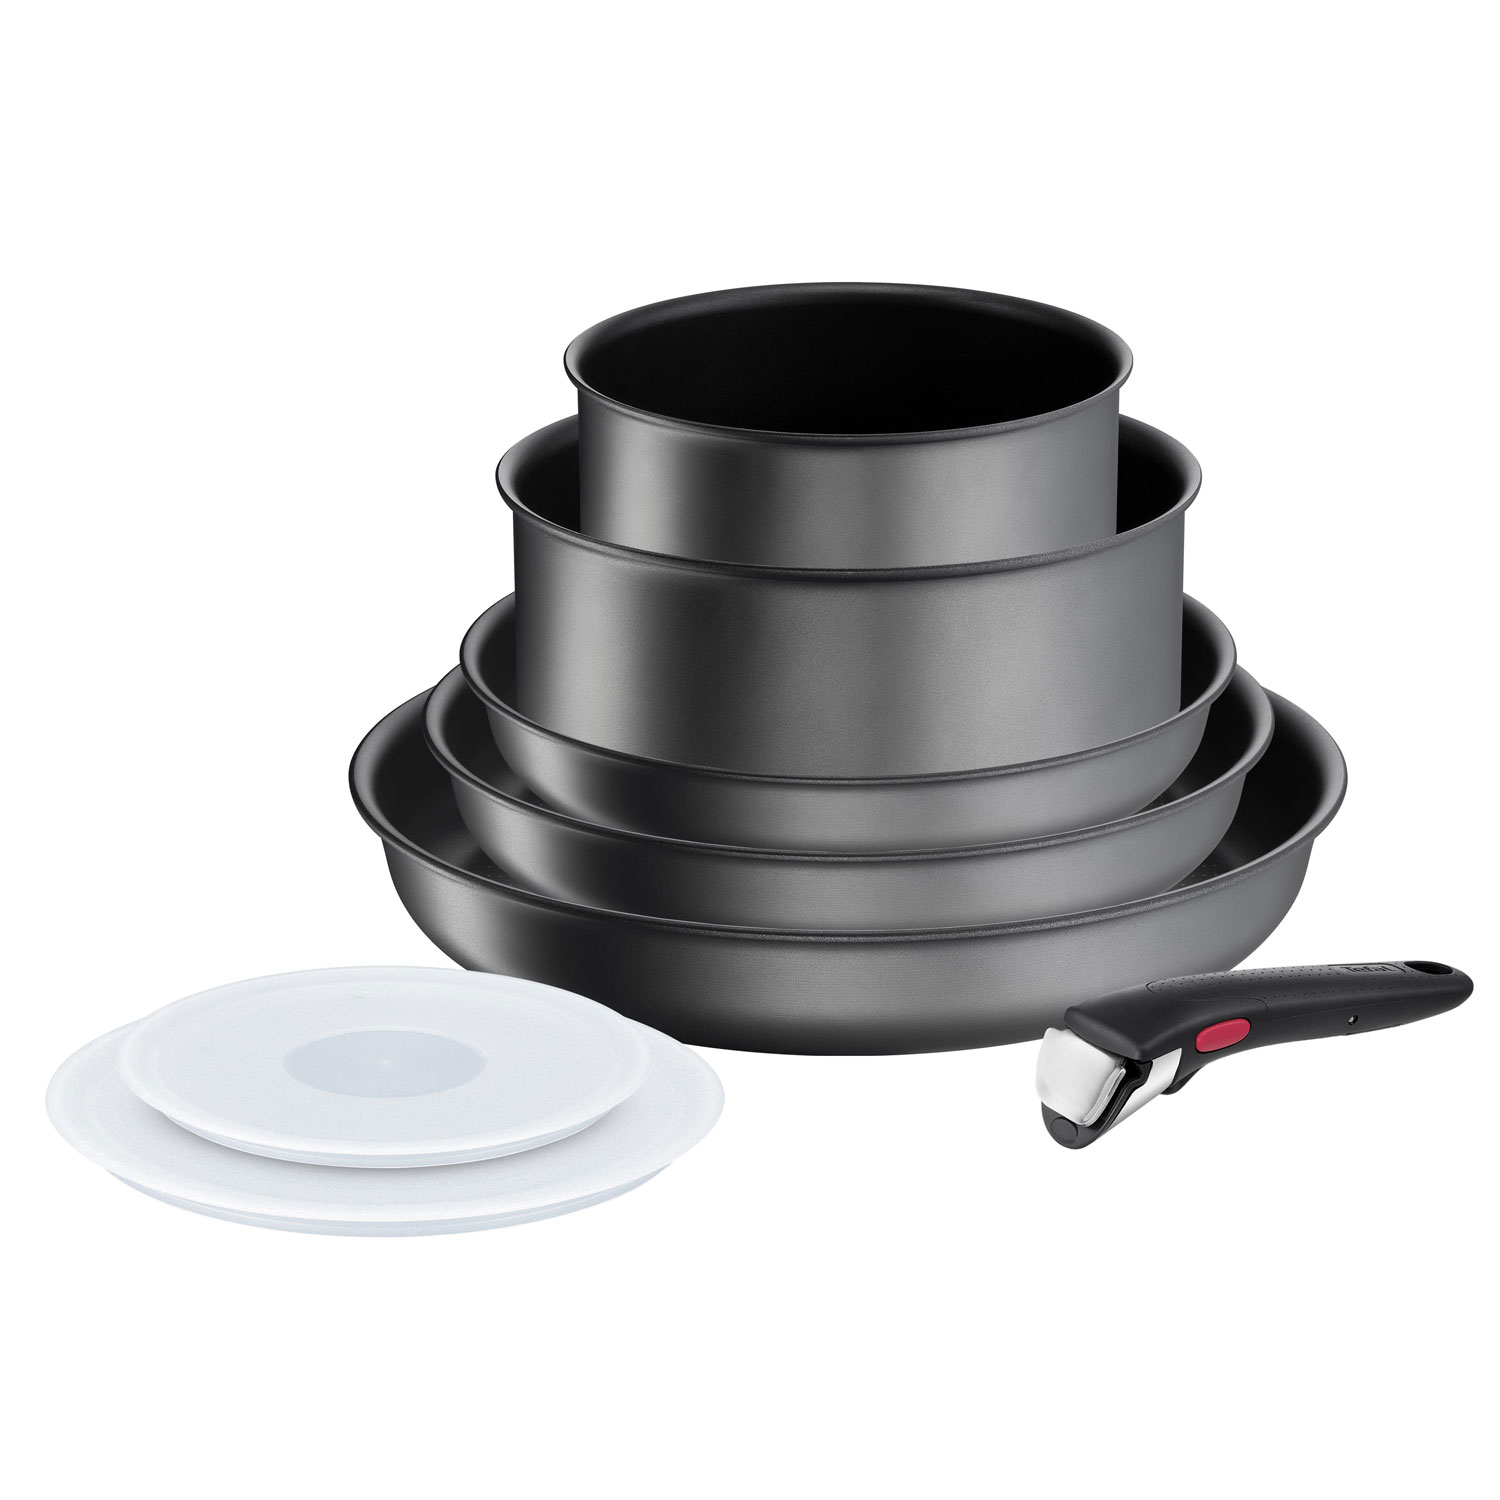  Tefal Ingenio Expertise Black Aluminium Saucepan, Aluminium,  black, 20 cm: Home & Kitchen